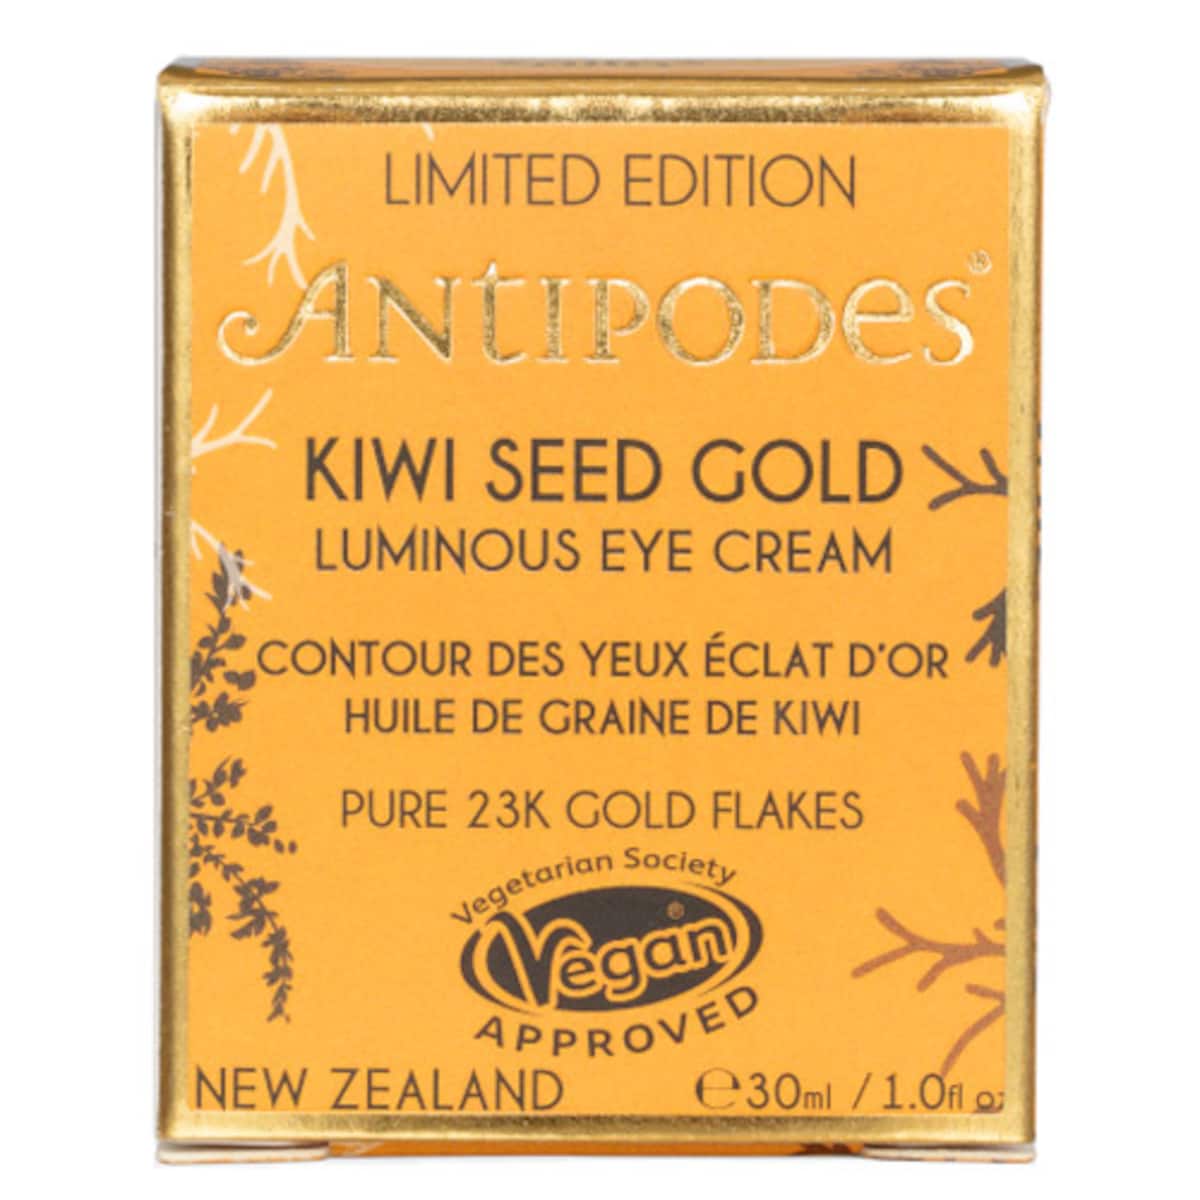 Antipodes Kiwi Seed Gold Luminous Eye Cream 30Ml